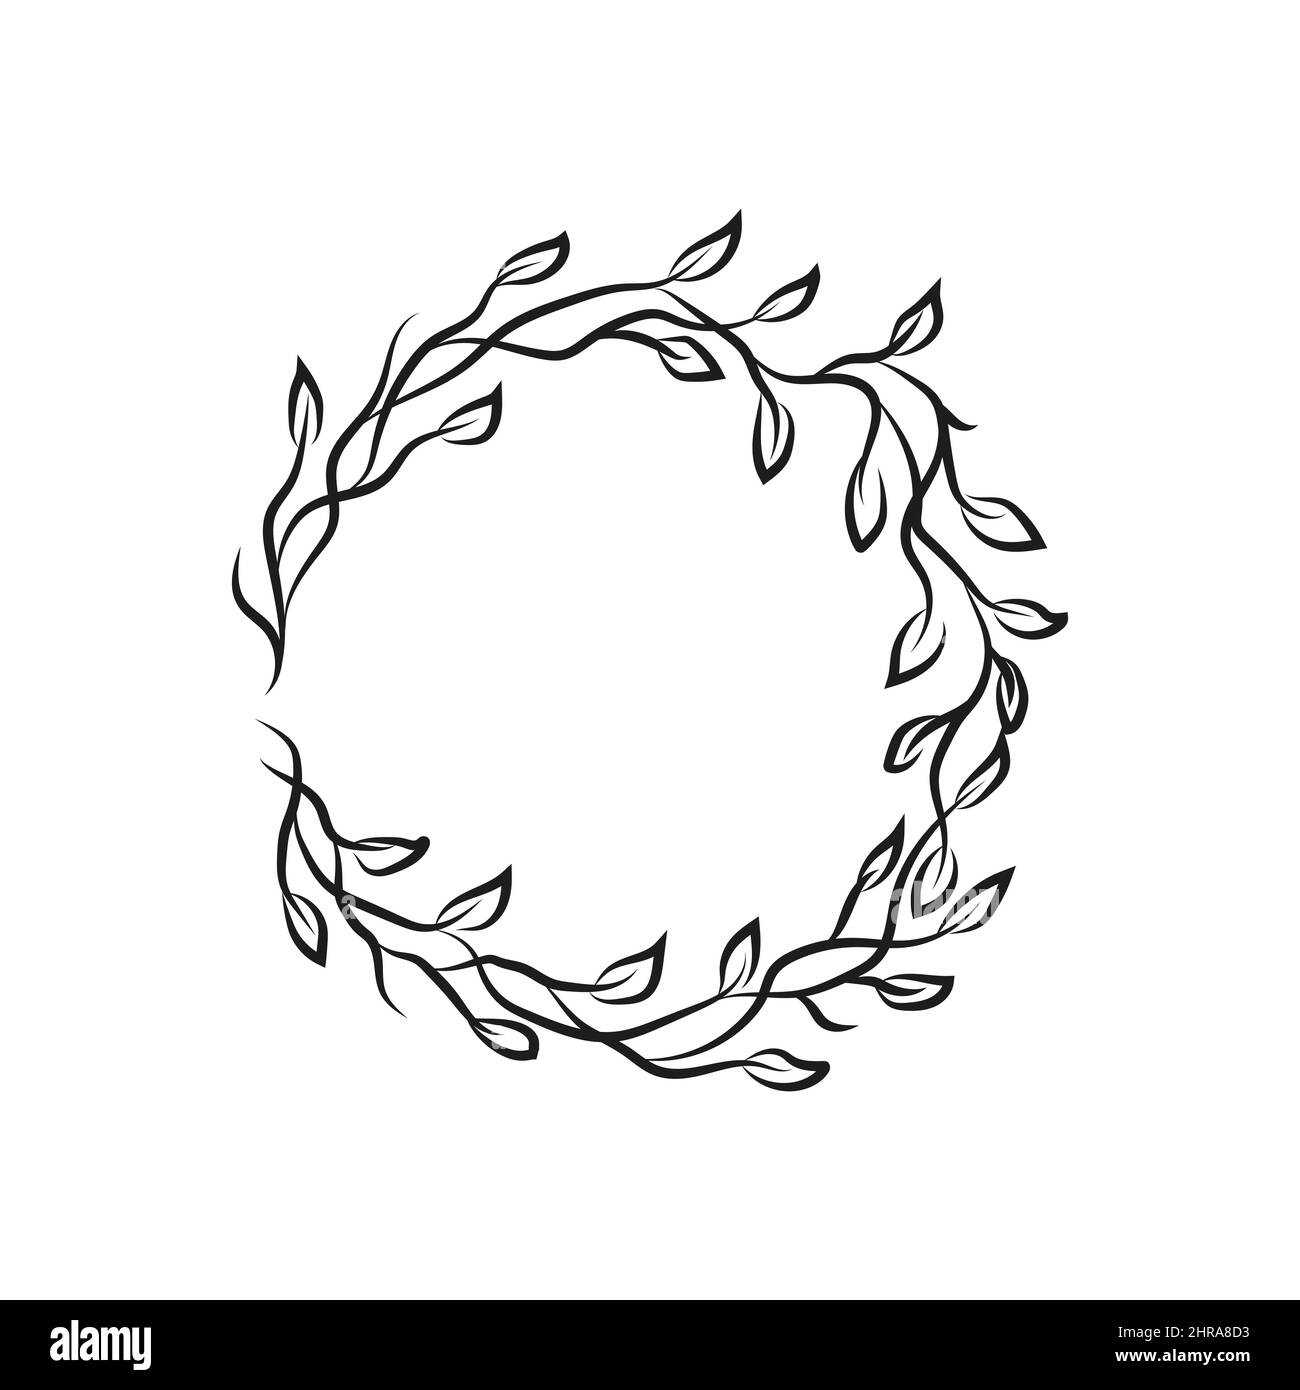 Eleganter rustikaler Rahmen für sommerliches Design. Doodle handgezeichneten dekorativen Kranz mit Zweig, Kraut, Pflanze, verlassen und Blume, floral.Vector isoliertes Design Stock Vektor